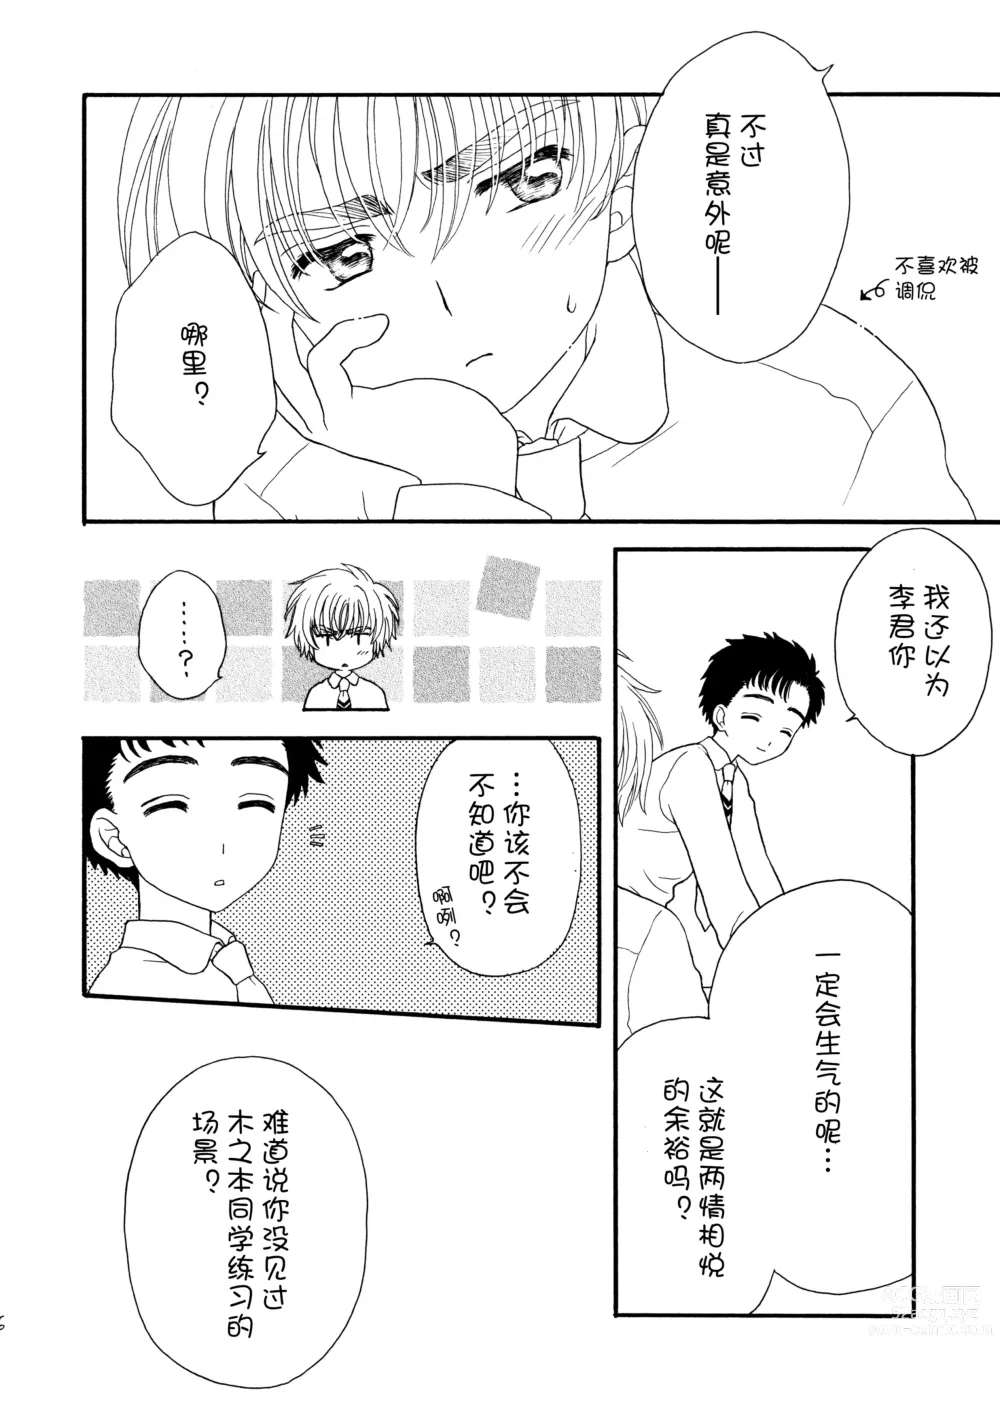 Page 6 of doujinshi Hitorijime